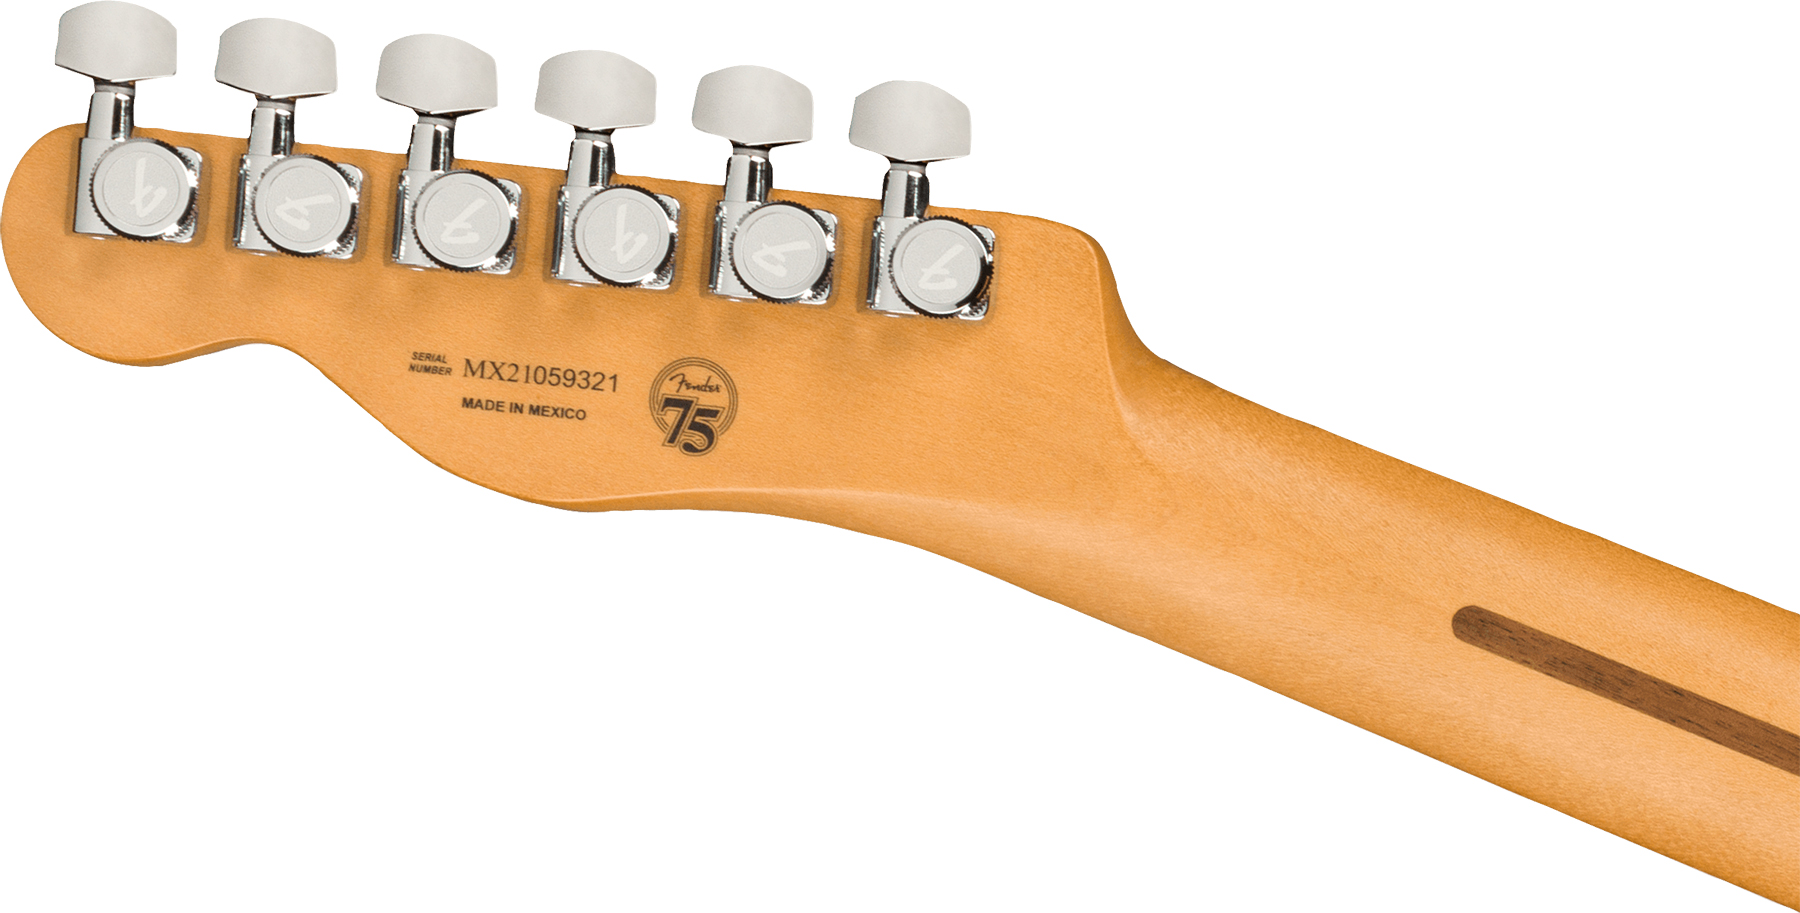 Fender Tele Player Plus Nashville Mex 3s Ht Mn - Butterscotch Blonde - Guitarra eléctrica con forma de tel - Variation 3